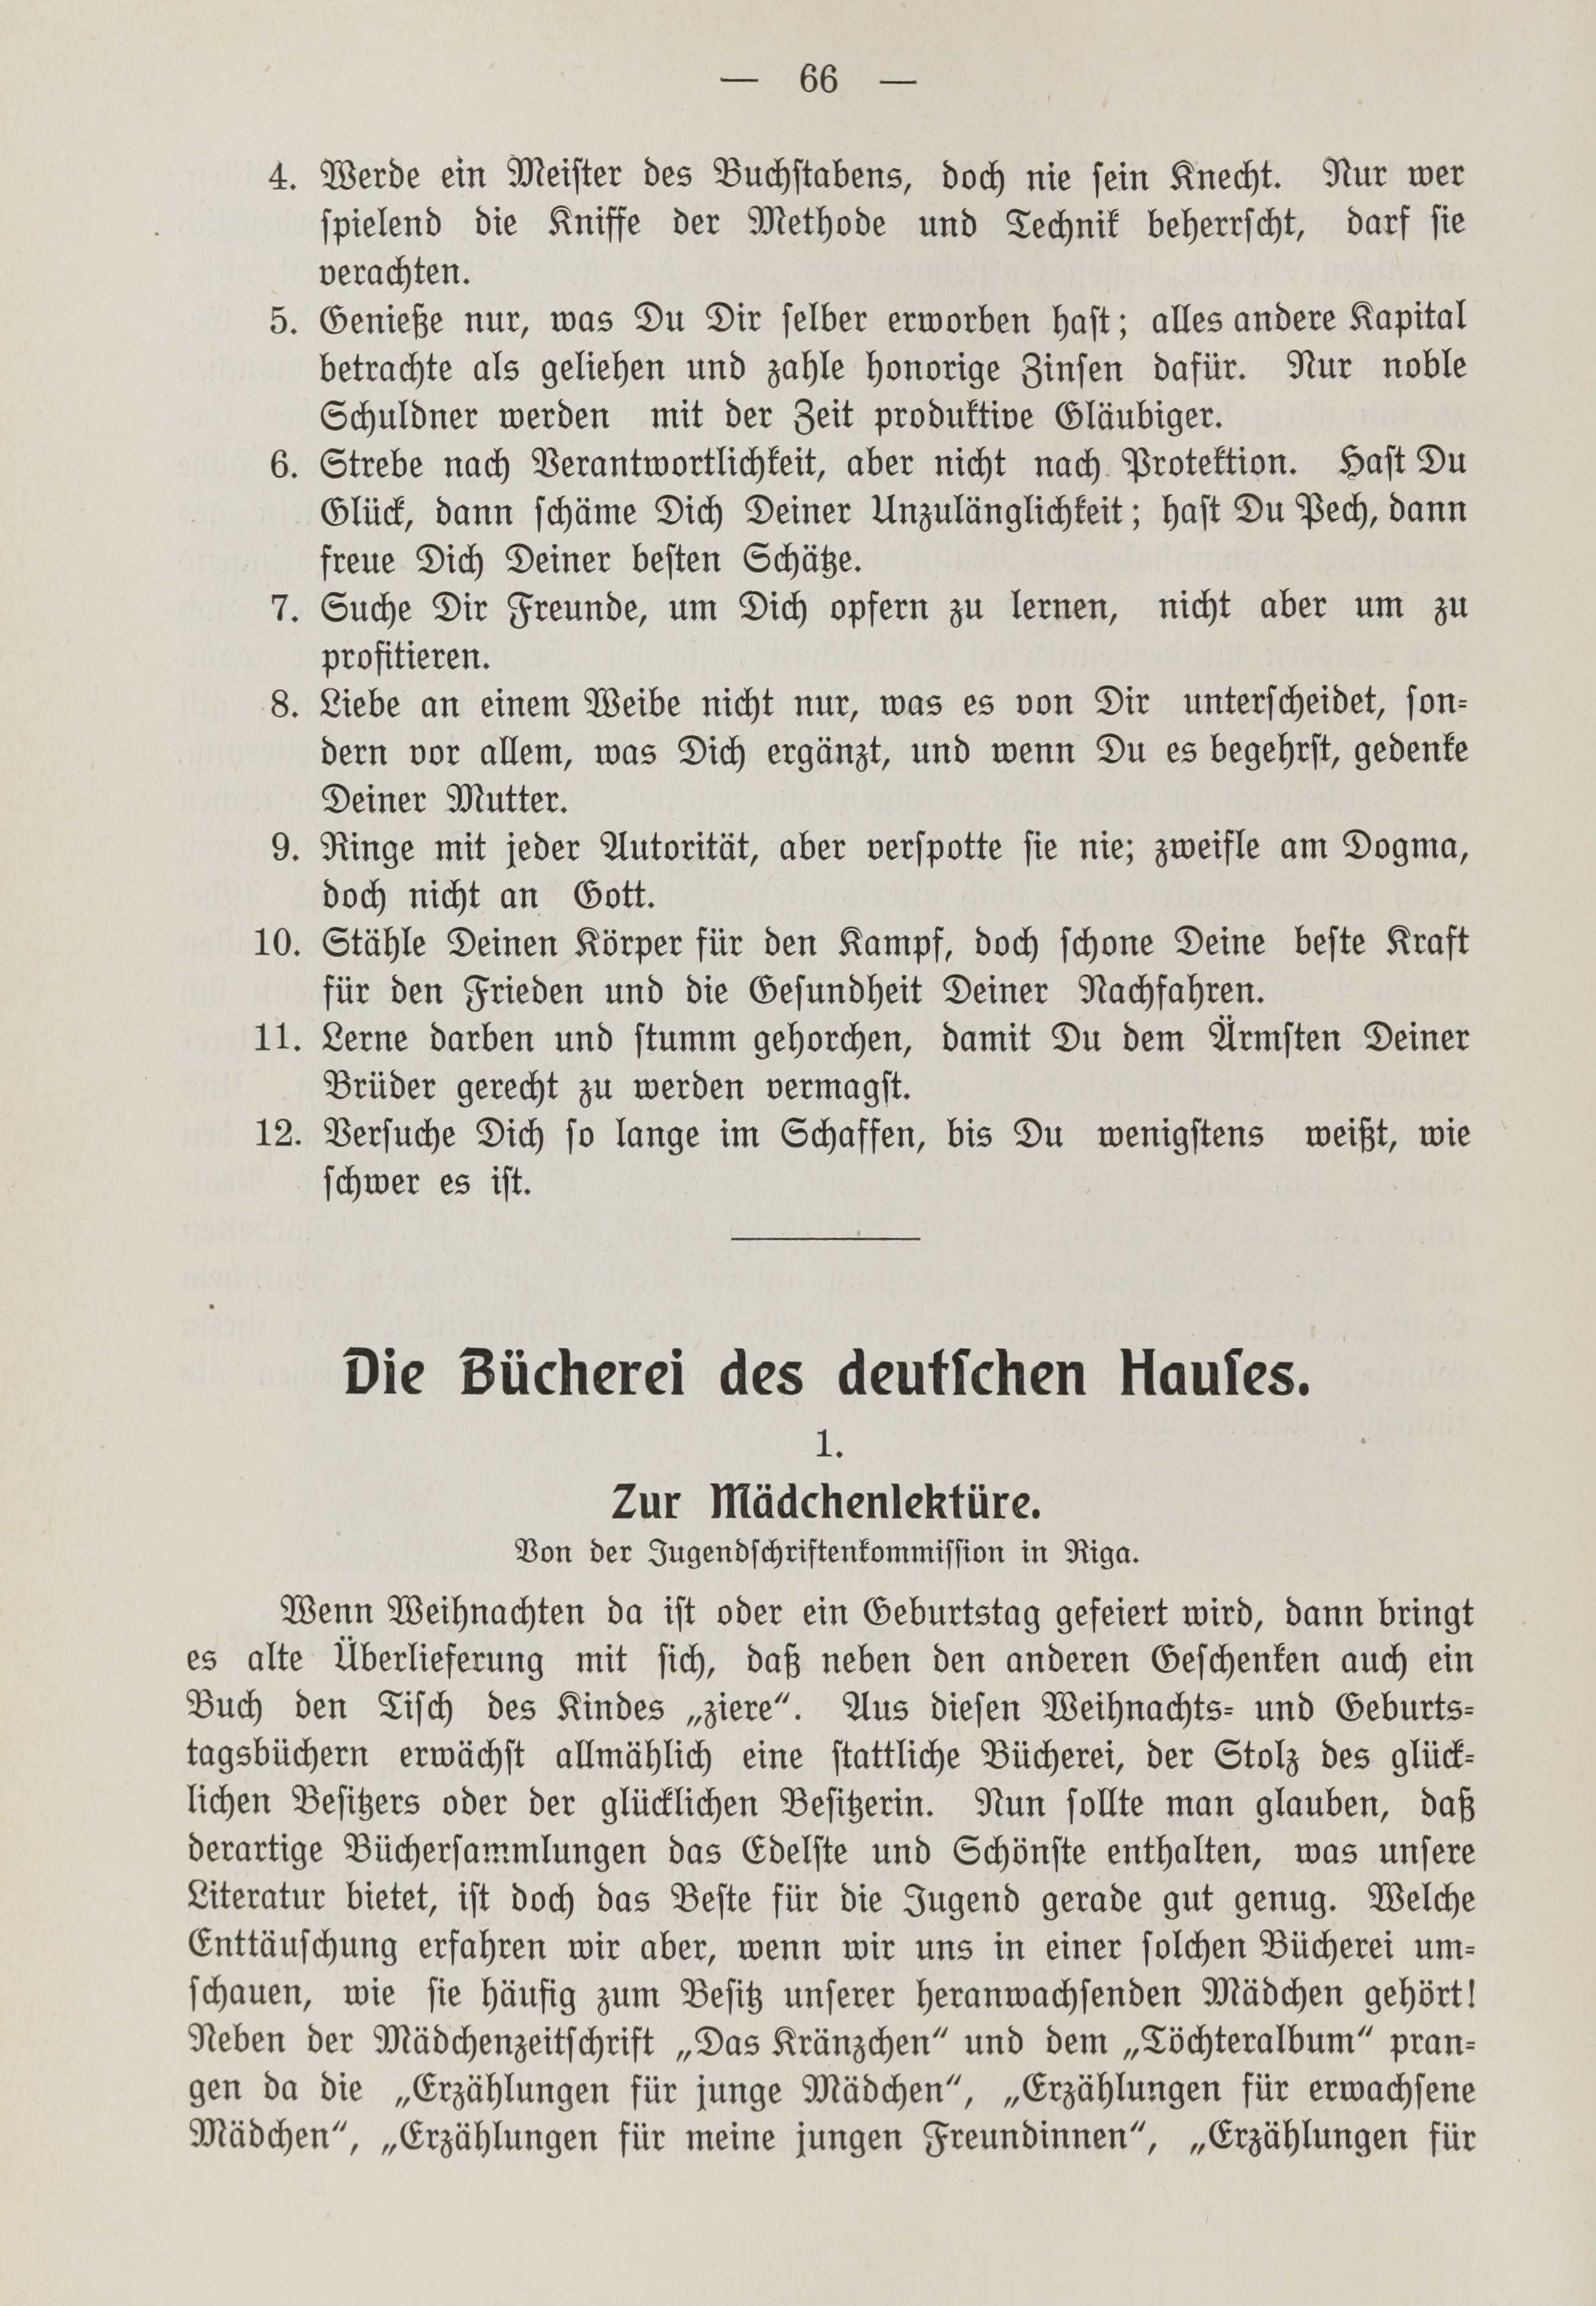 Deutsche Monatsschrift für Russland [1] (1912) | 73. (66) Main body of text